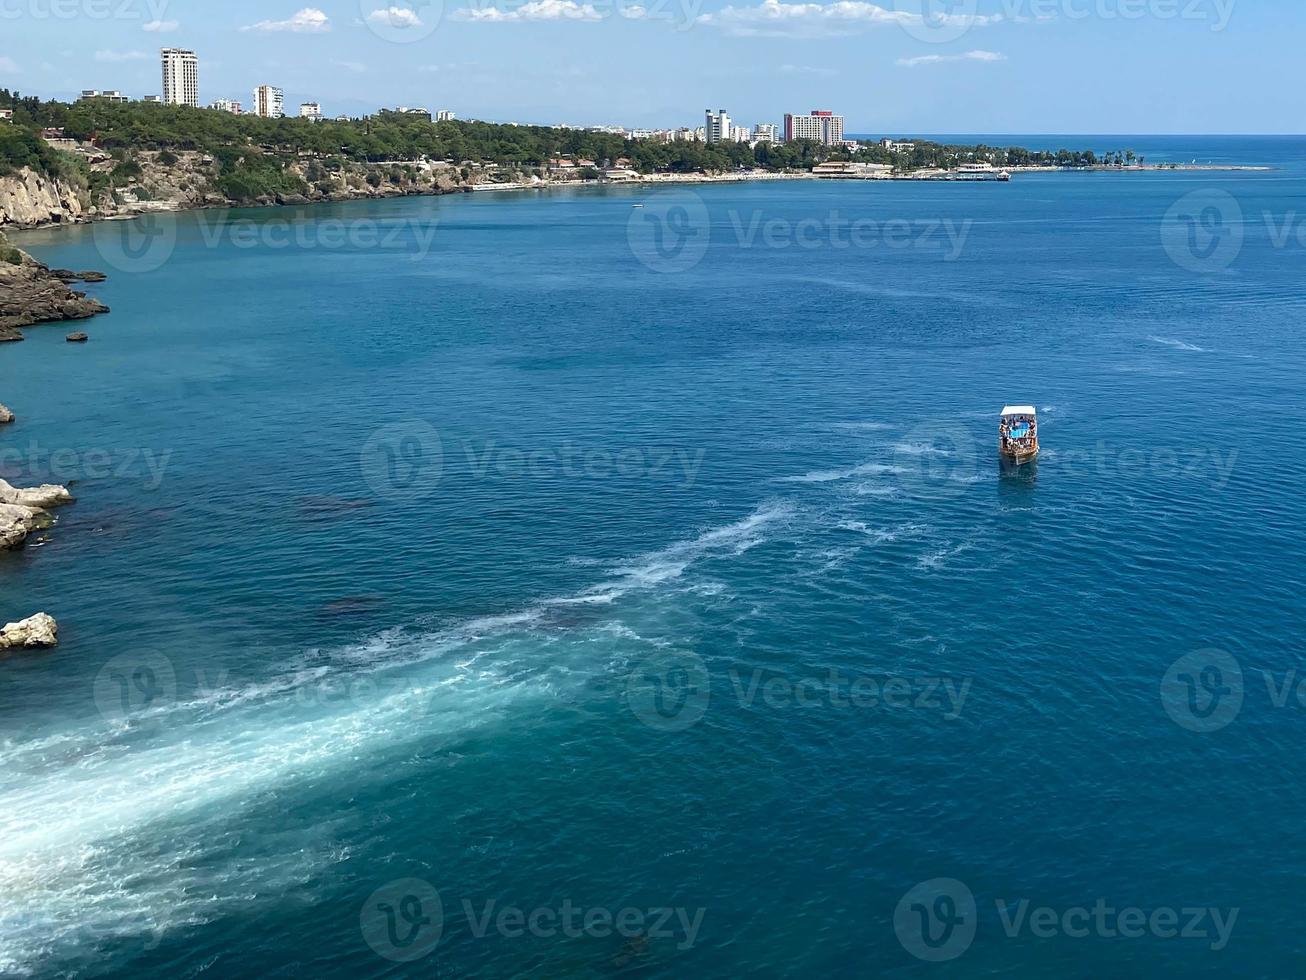 vista del resort con playa de arena y botes de motor flotantes foto